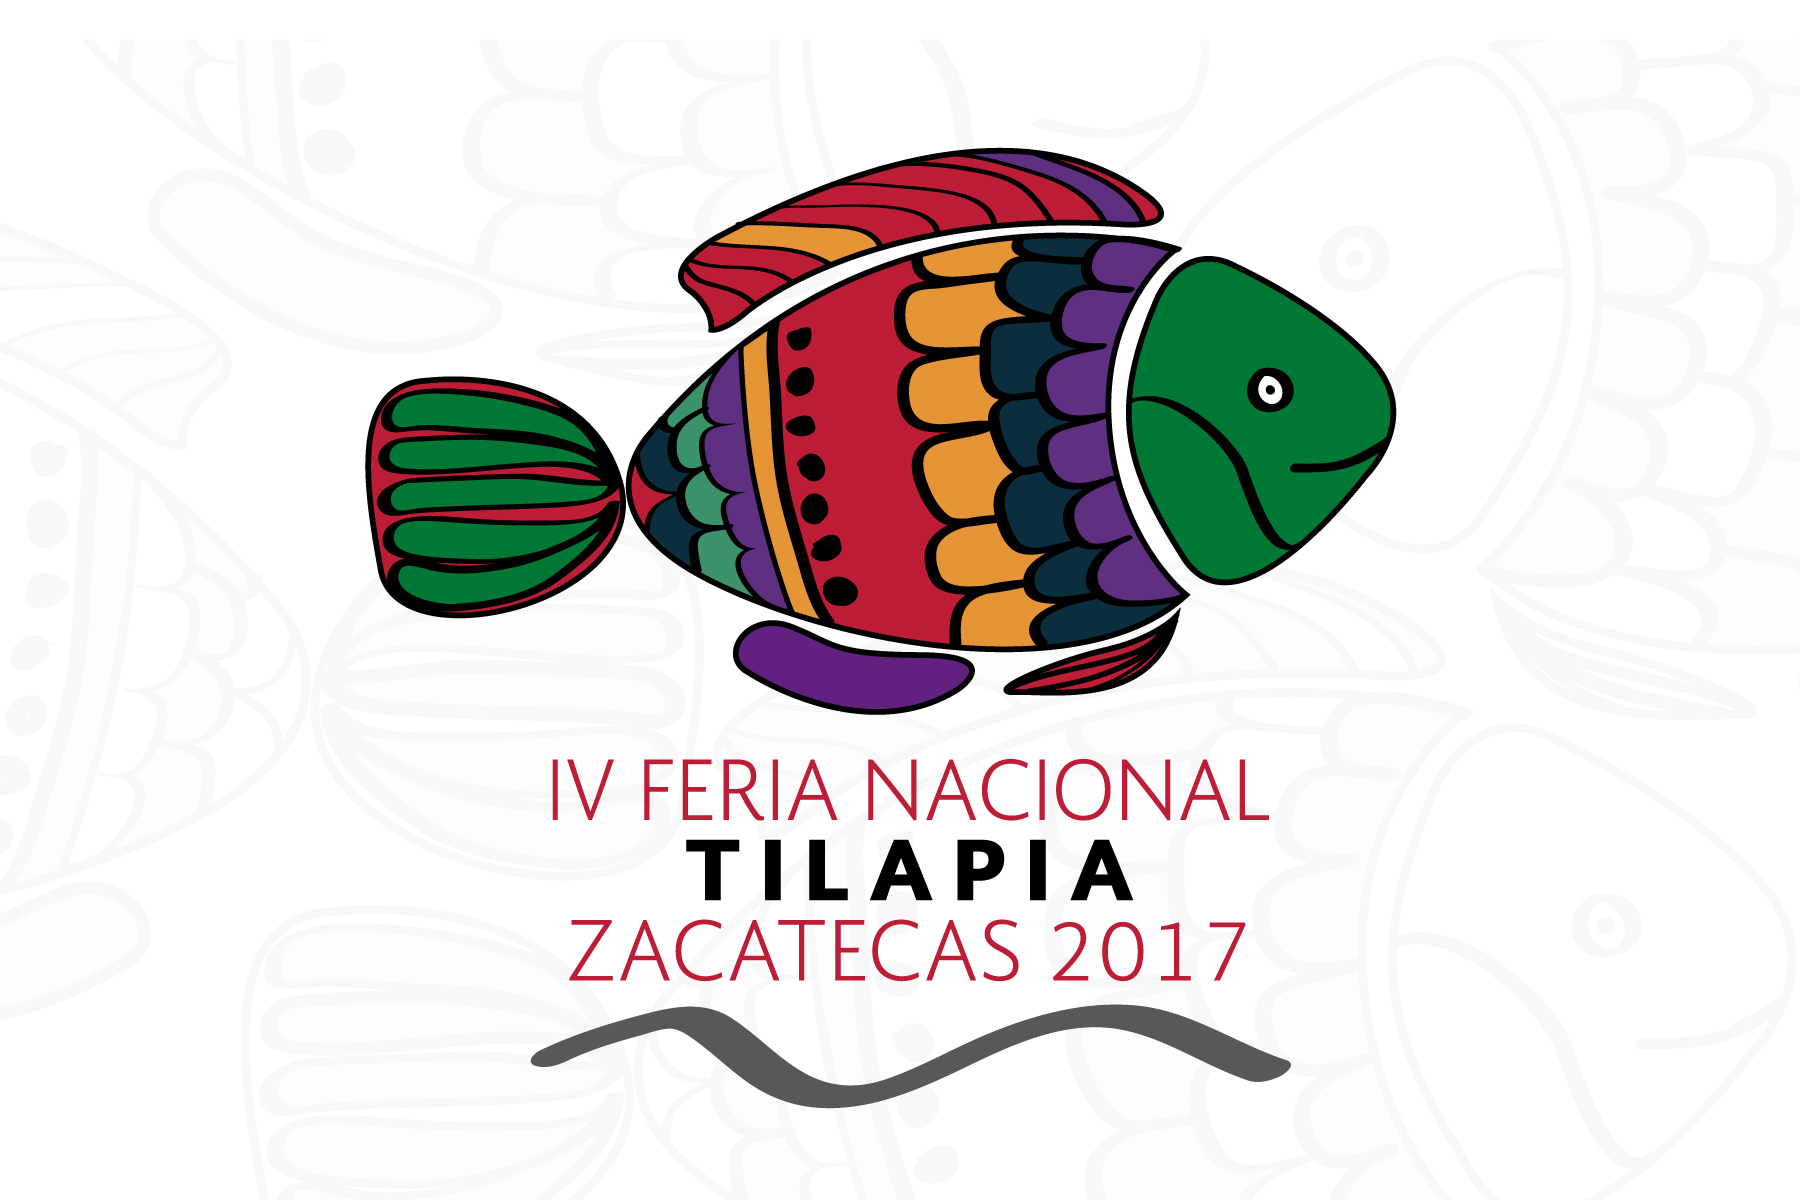 Anuncian la IV Feria Nacional Tilapia Zacatecas 2017, que tendrá lugar del 23 al 25 de febrero, en la plaza Bicentenario.